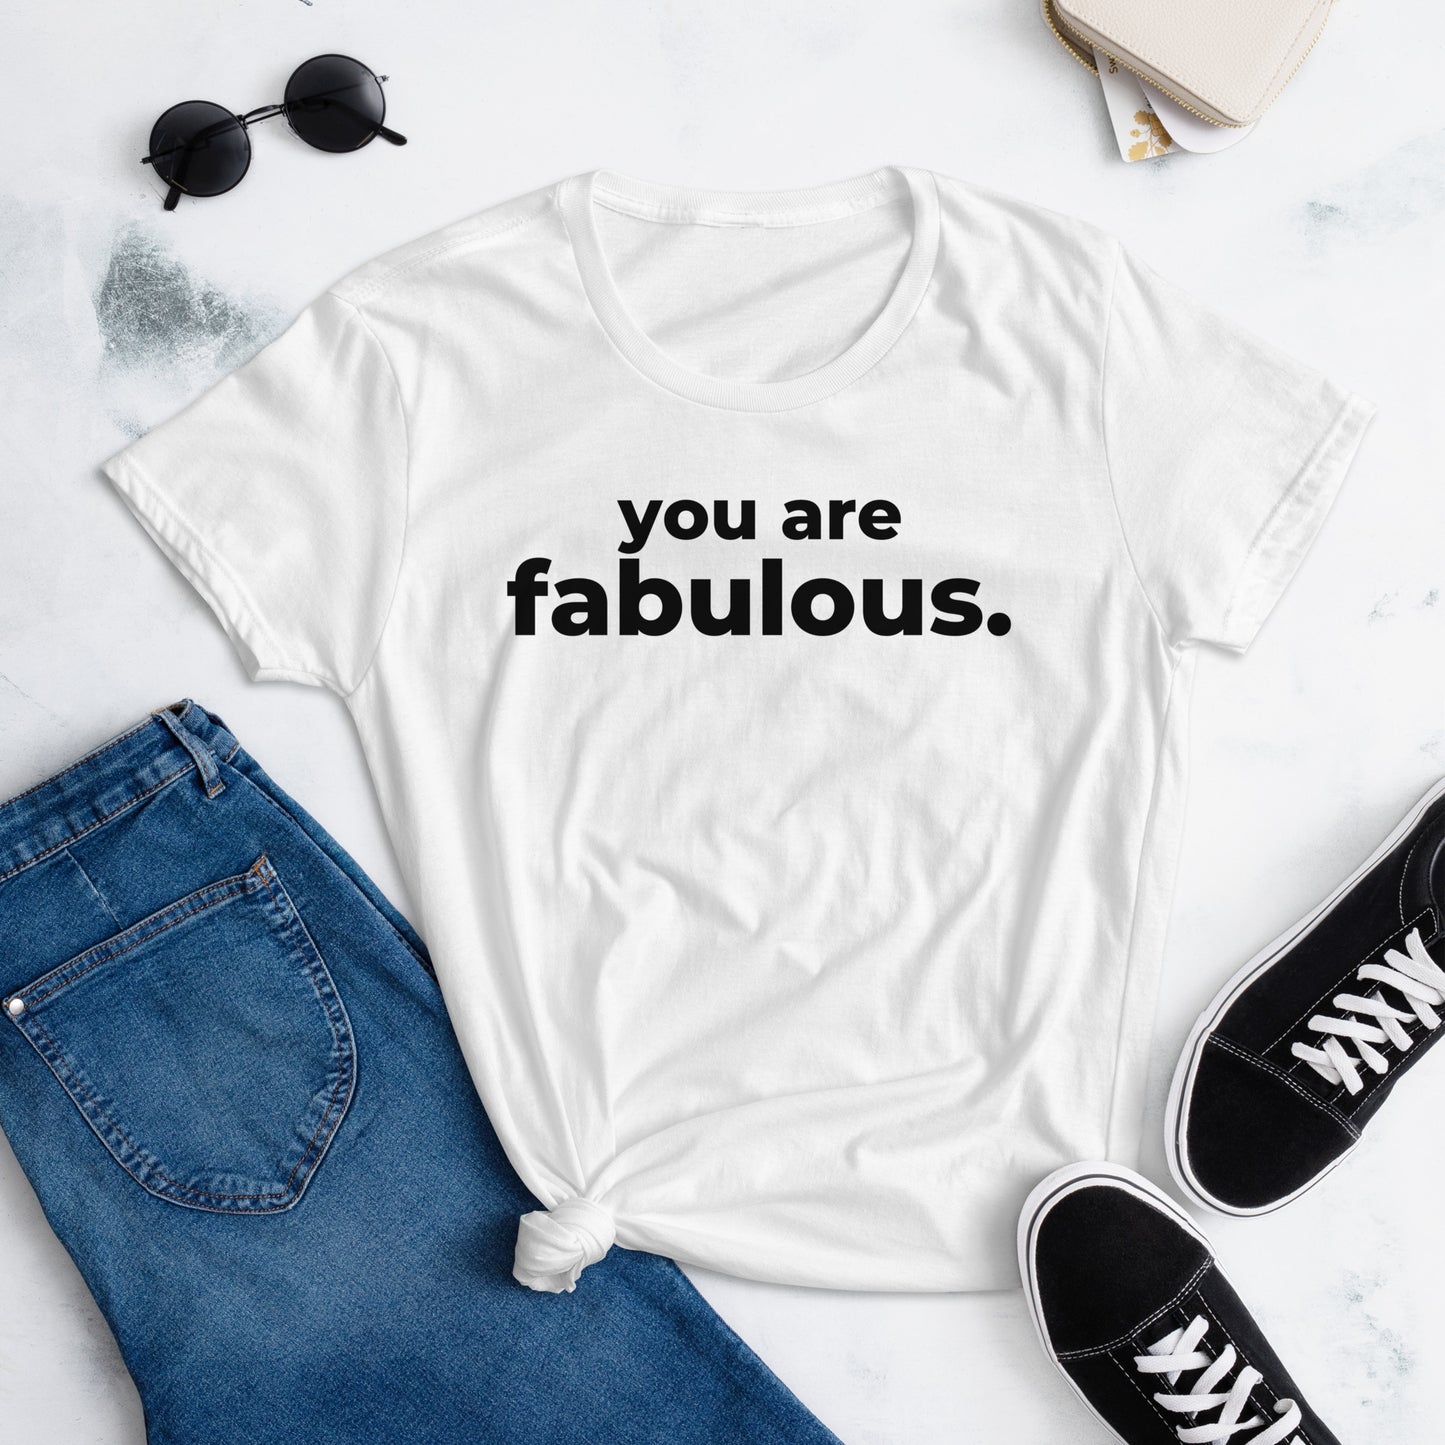 YOU ARE FABULOUS - Women's short sleeve t-shirt